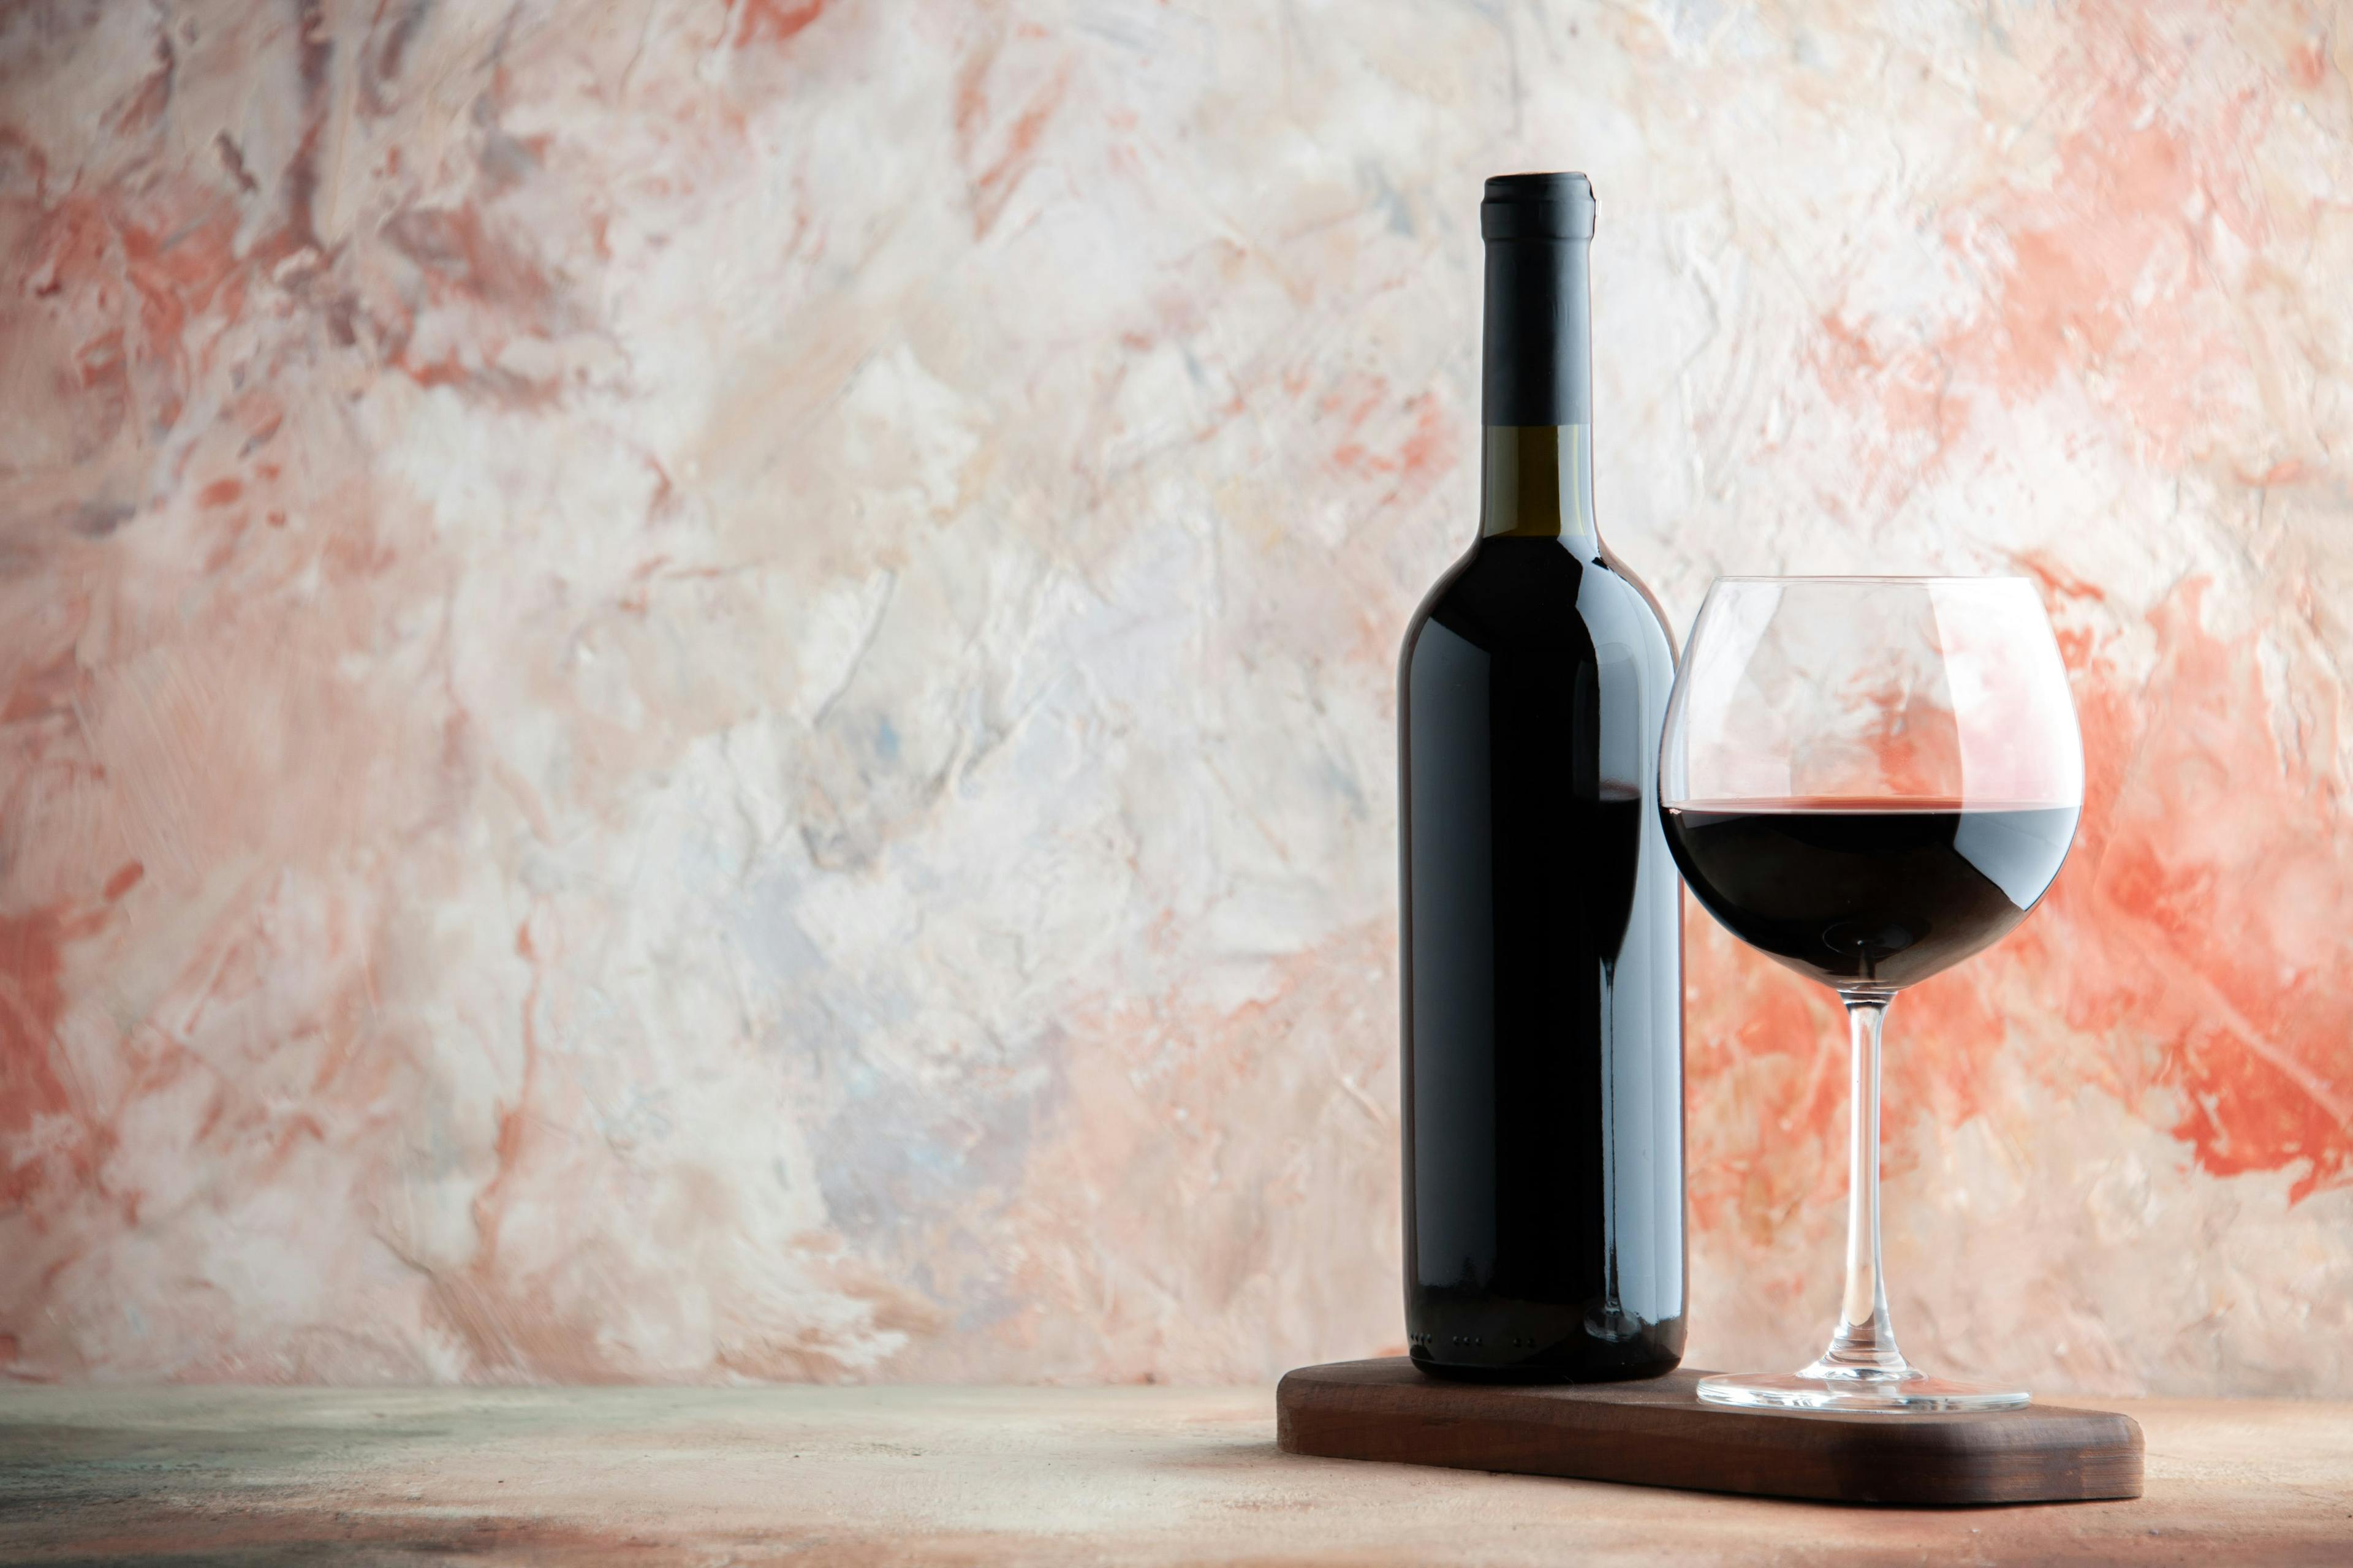 Elegant rödvinflaska och fyllt vinglas på träunderlägg med marmorbakgrund för vinälskare.